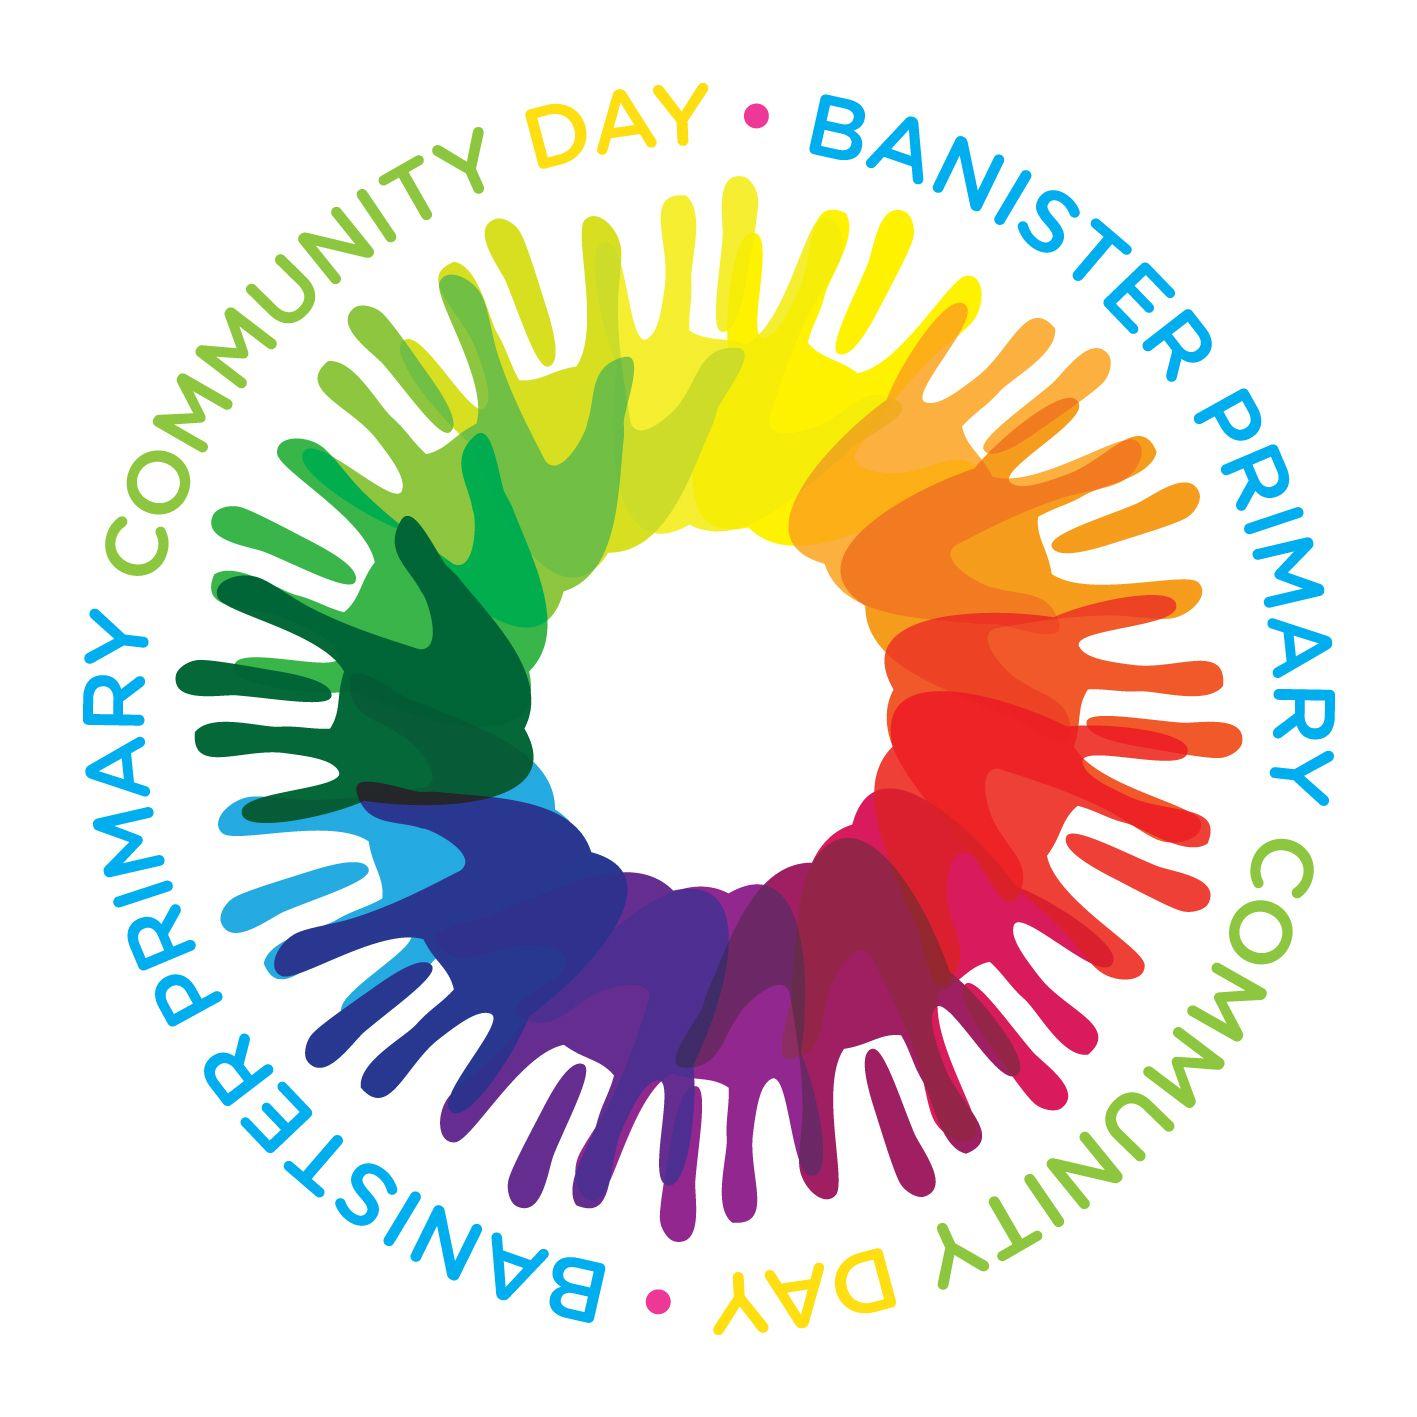 Google Community Logo - Community Day